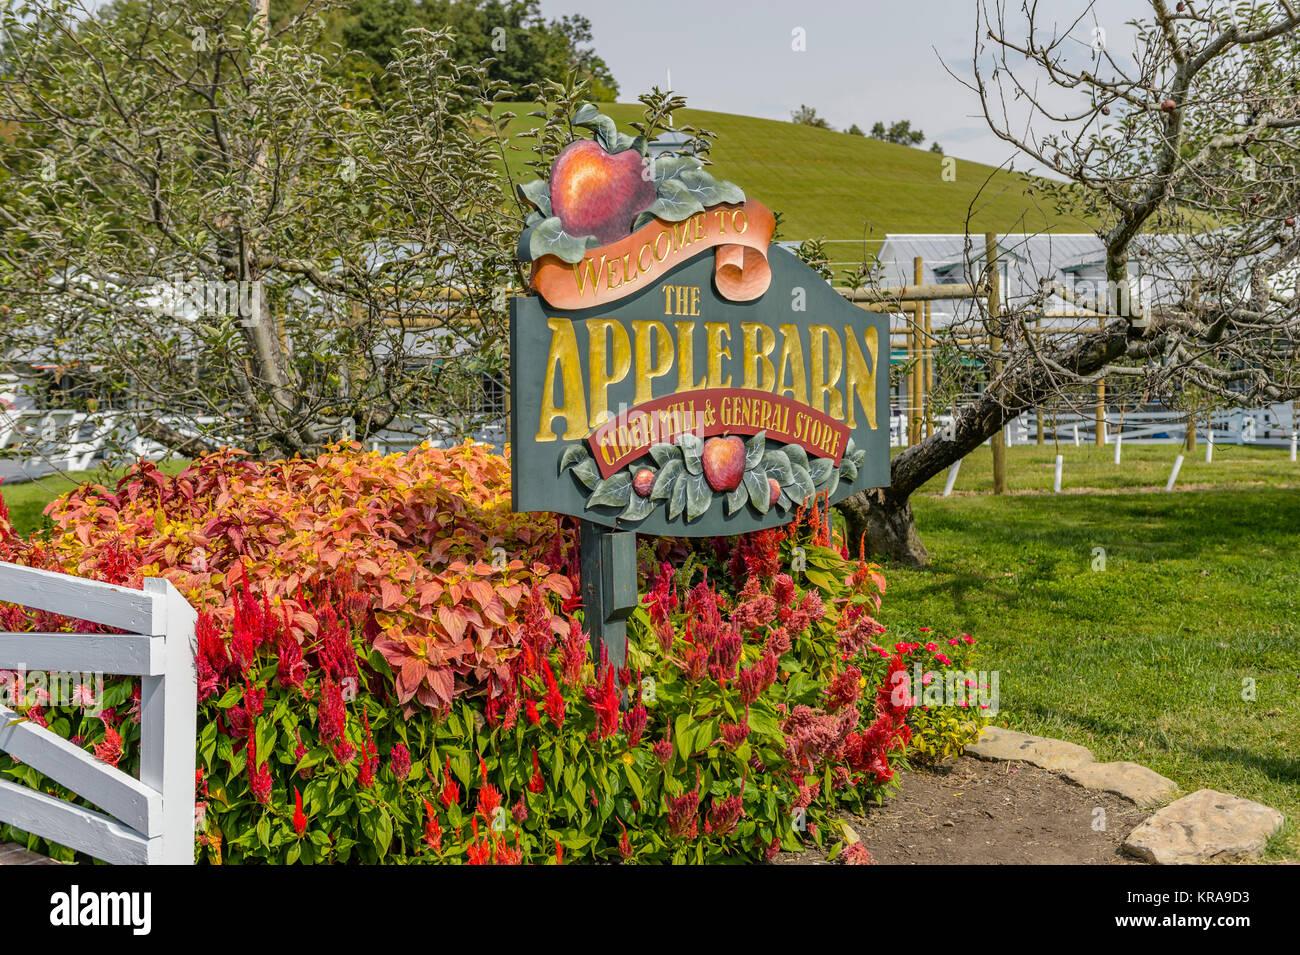 Eingang anmelden oder Beschilderungen für den Apple Barn Cider Mill und General Store in Sevierville TN, USA, eine touristische Attraktion in Tennessee apple Land. Stockfoto